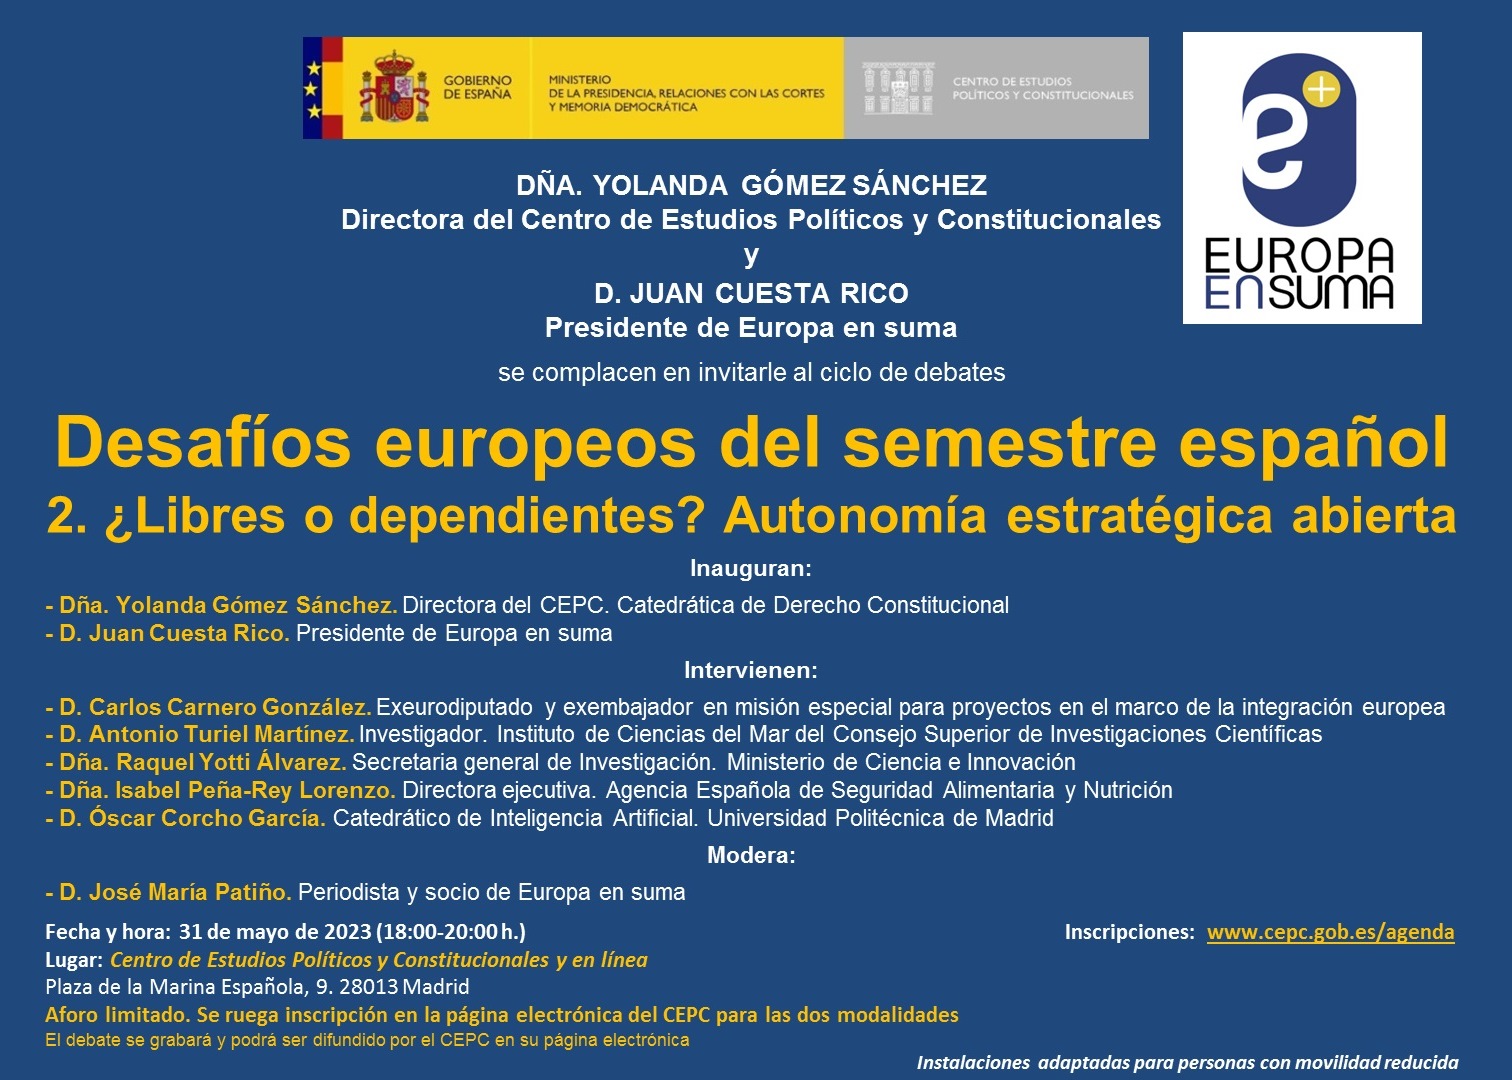 Desafíos europeos del semestre español "¿Libres o dependientes? Autonomía estratégica abierta"